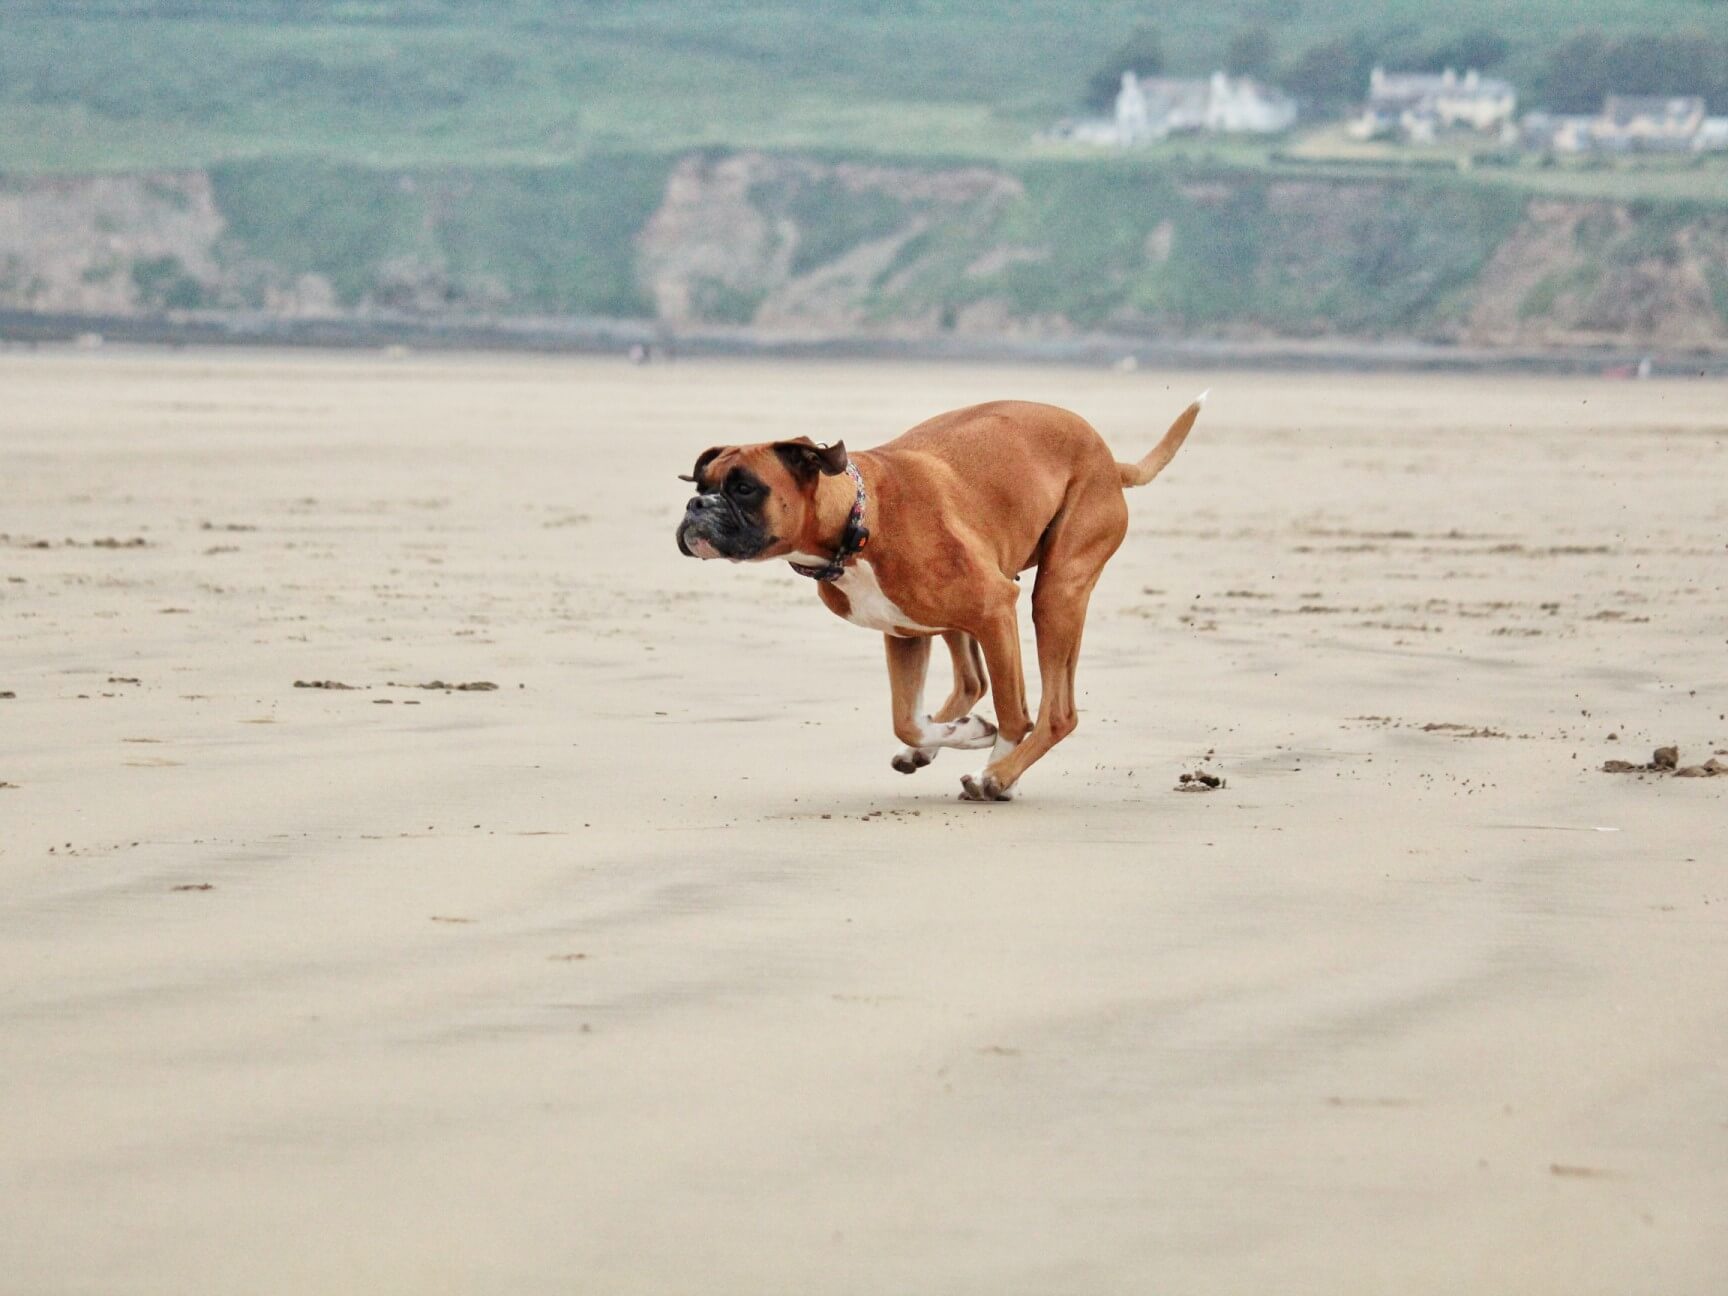 Boxer dog running across a beach